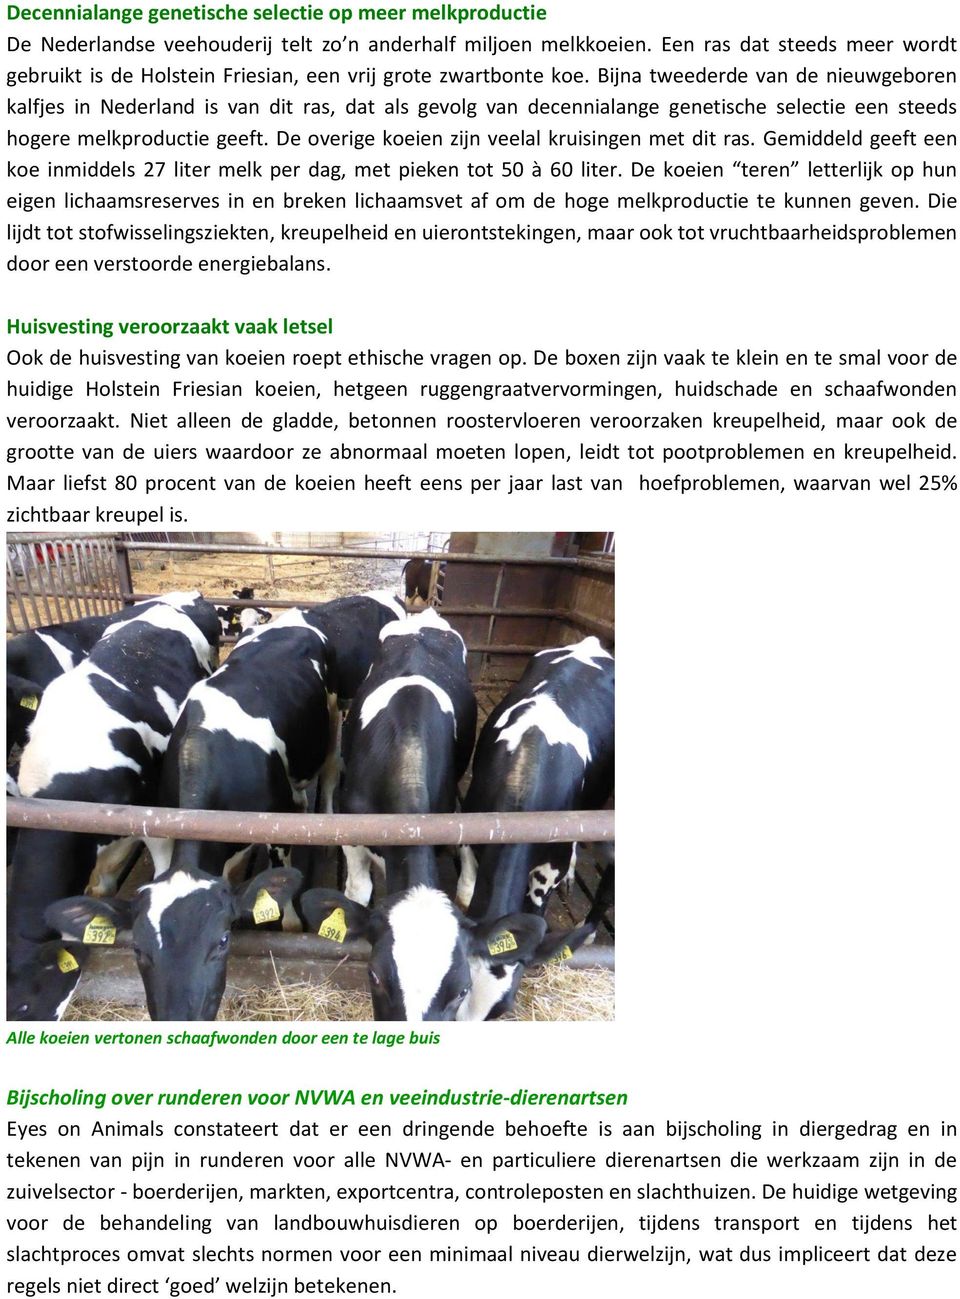 Bijna tweederde van de nieuwgeboren kalfjes in Nederland is van dit ras, dat als gevolg van decennialange genetische selectie een steeds hogere melkproductie geeft.